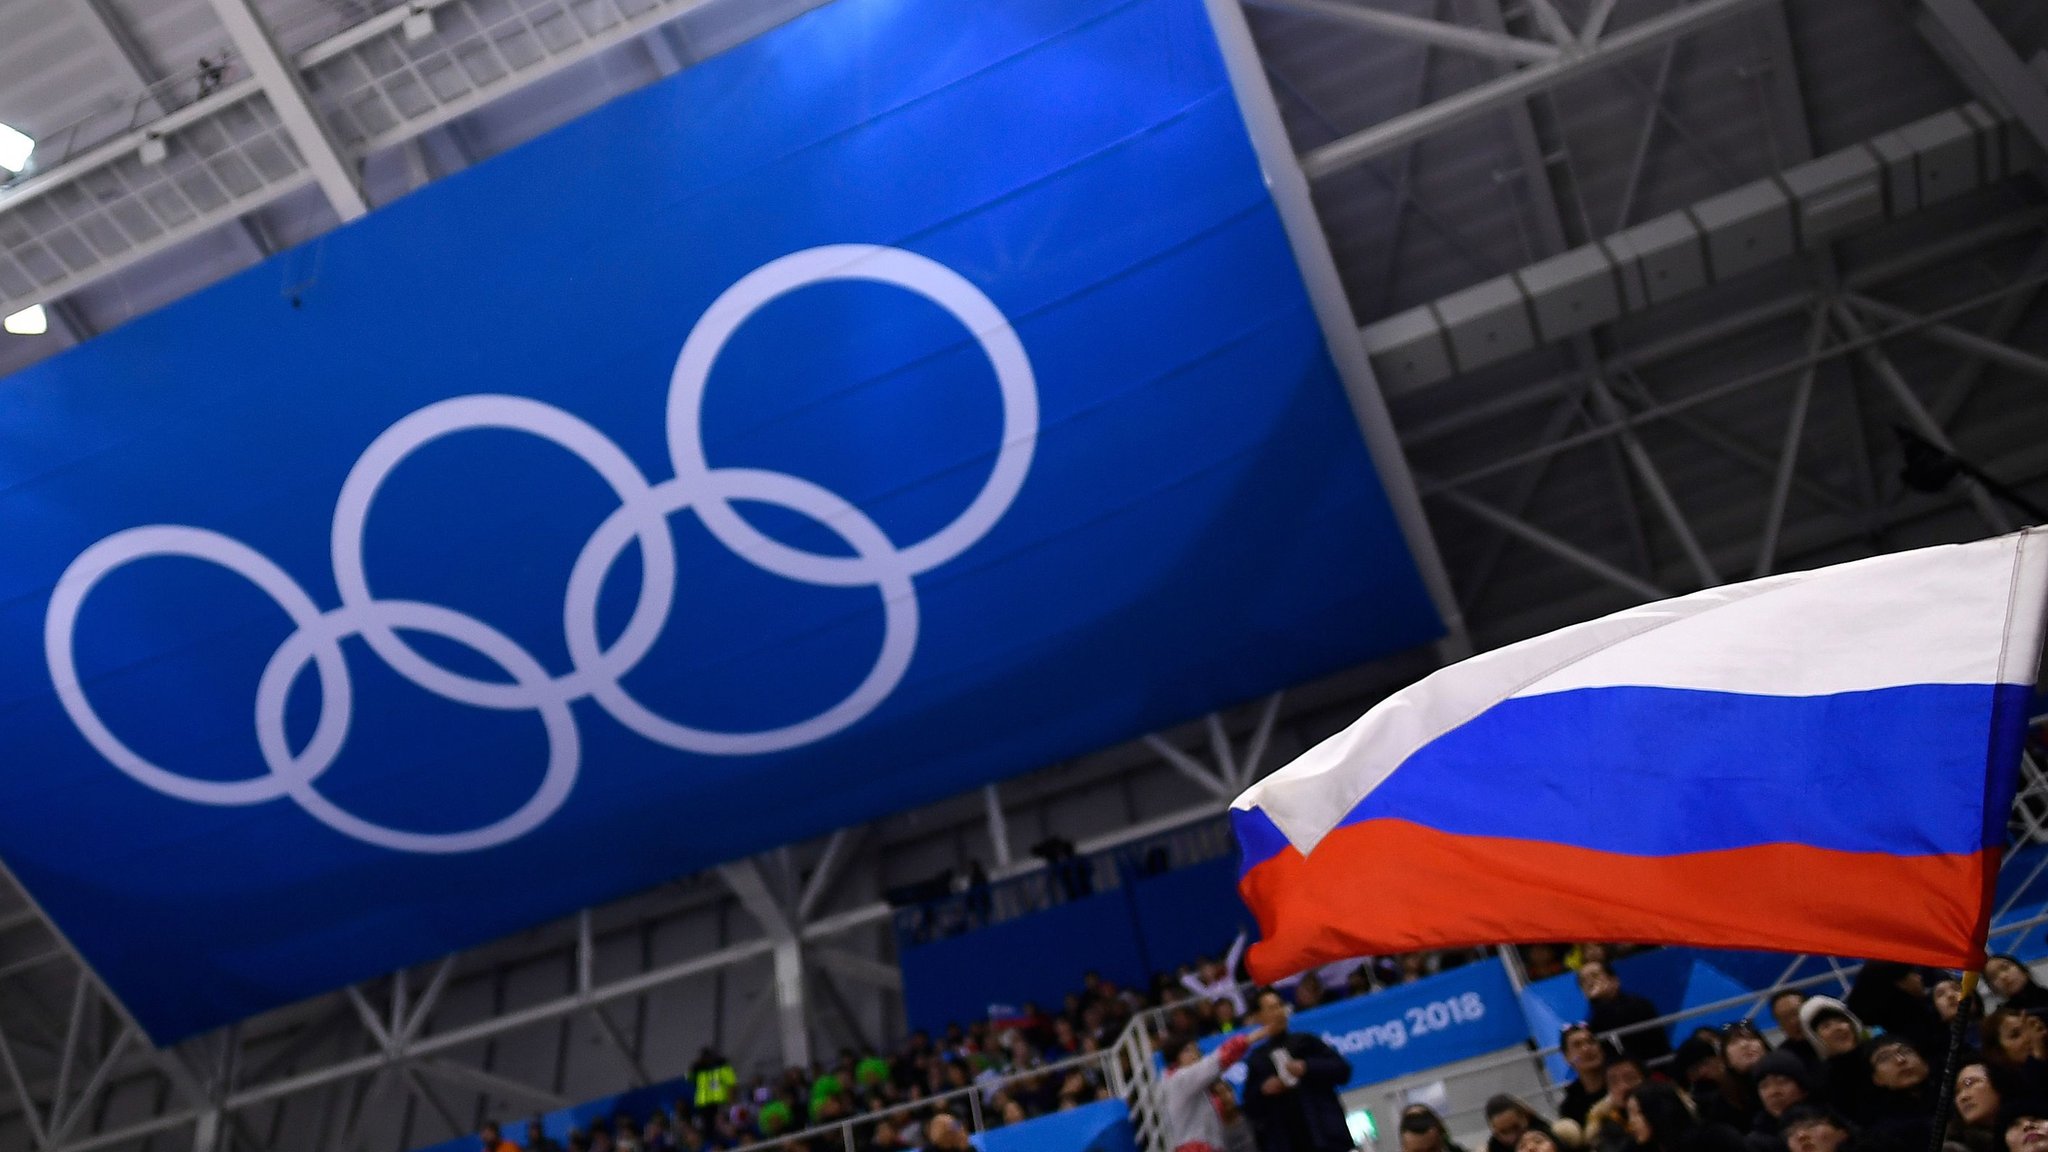 МОК рекомендовал допускать российских спортсменов в нейтральном статусе. Чем недовольны в России?